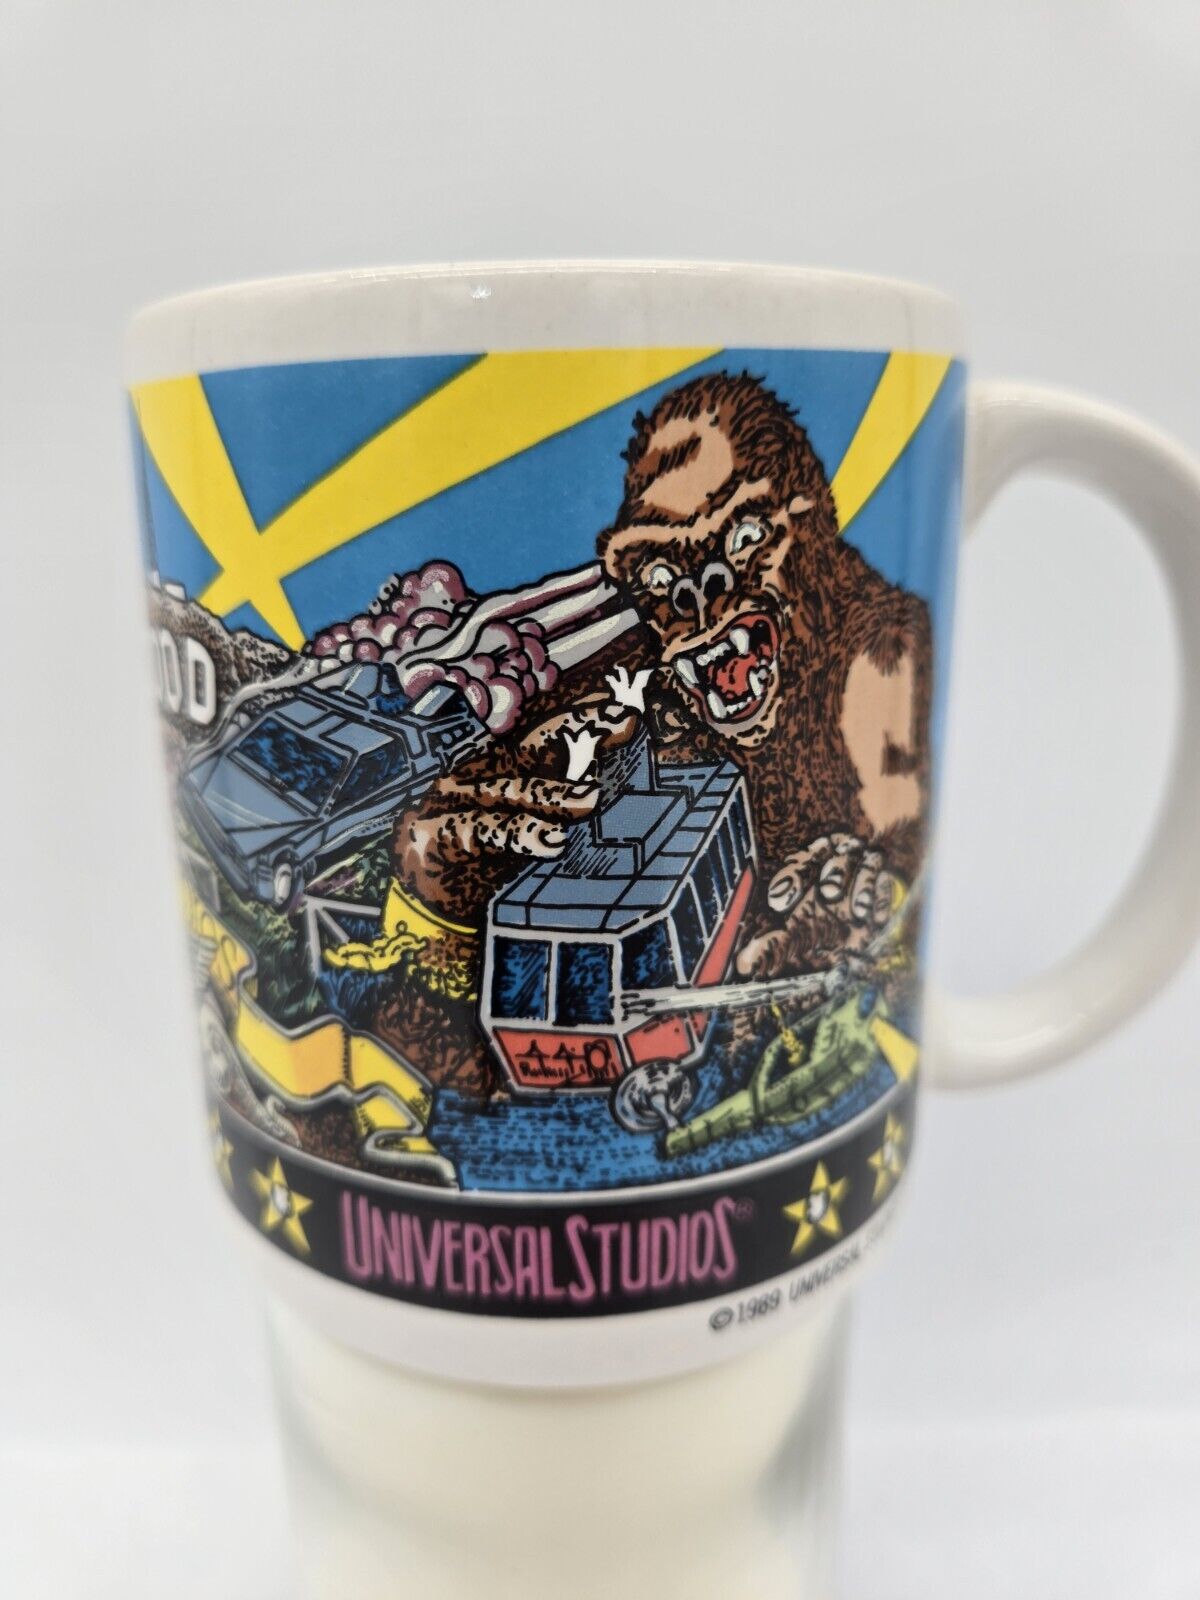 Vintage Universal Studios Florida 1989 Ceramic Coffee Mug Jaws ET King Kong 